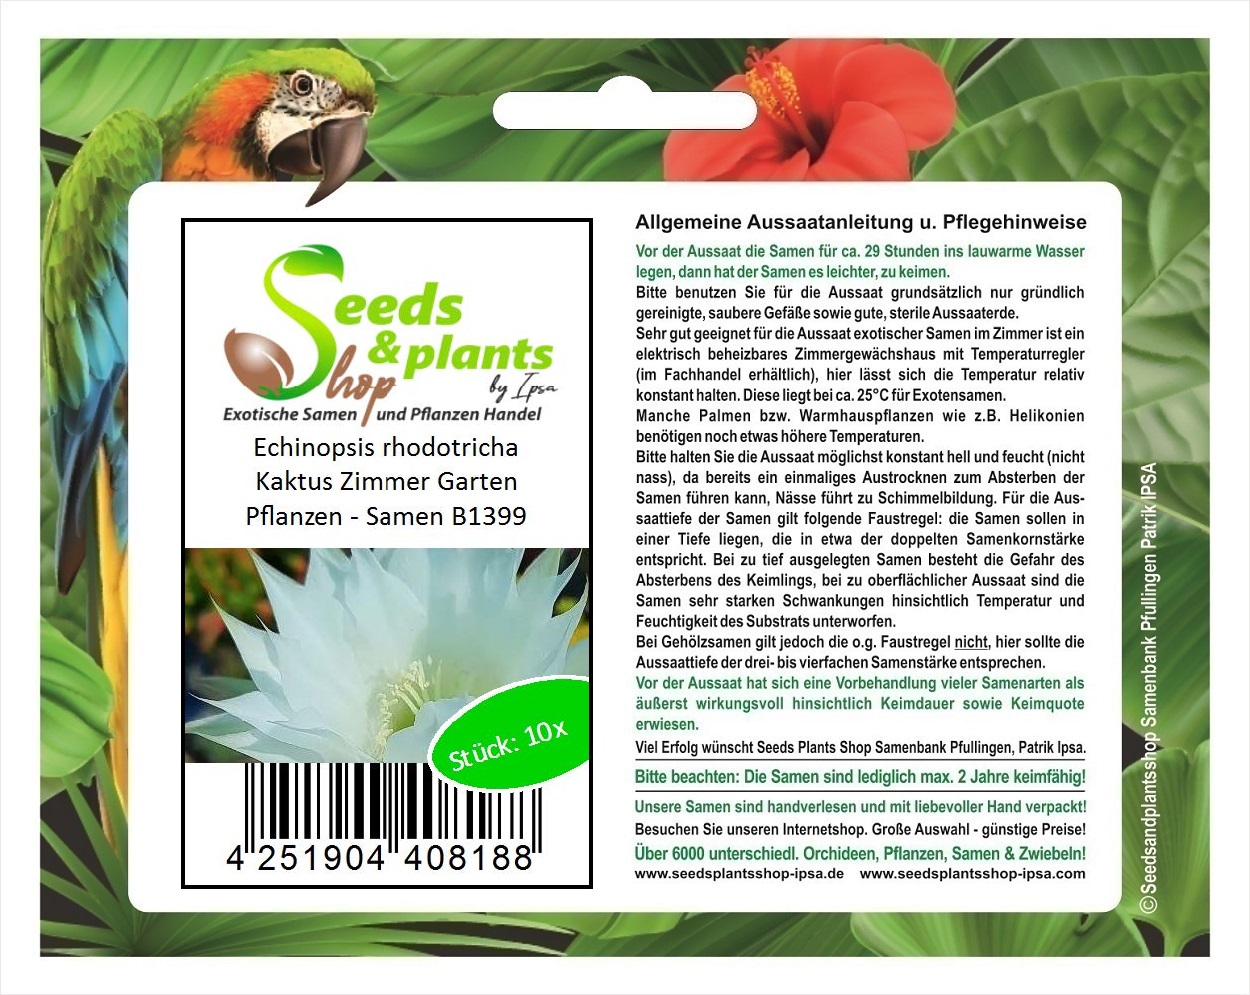 18x Echinopsis rhodotricha Kaktus Zimmer Garten Pflanzen   Samen B18